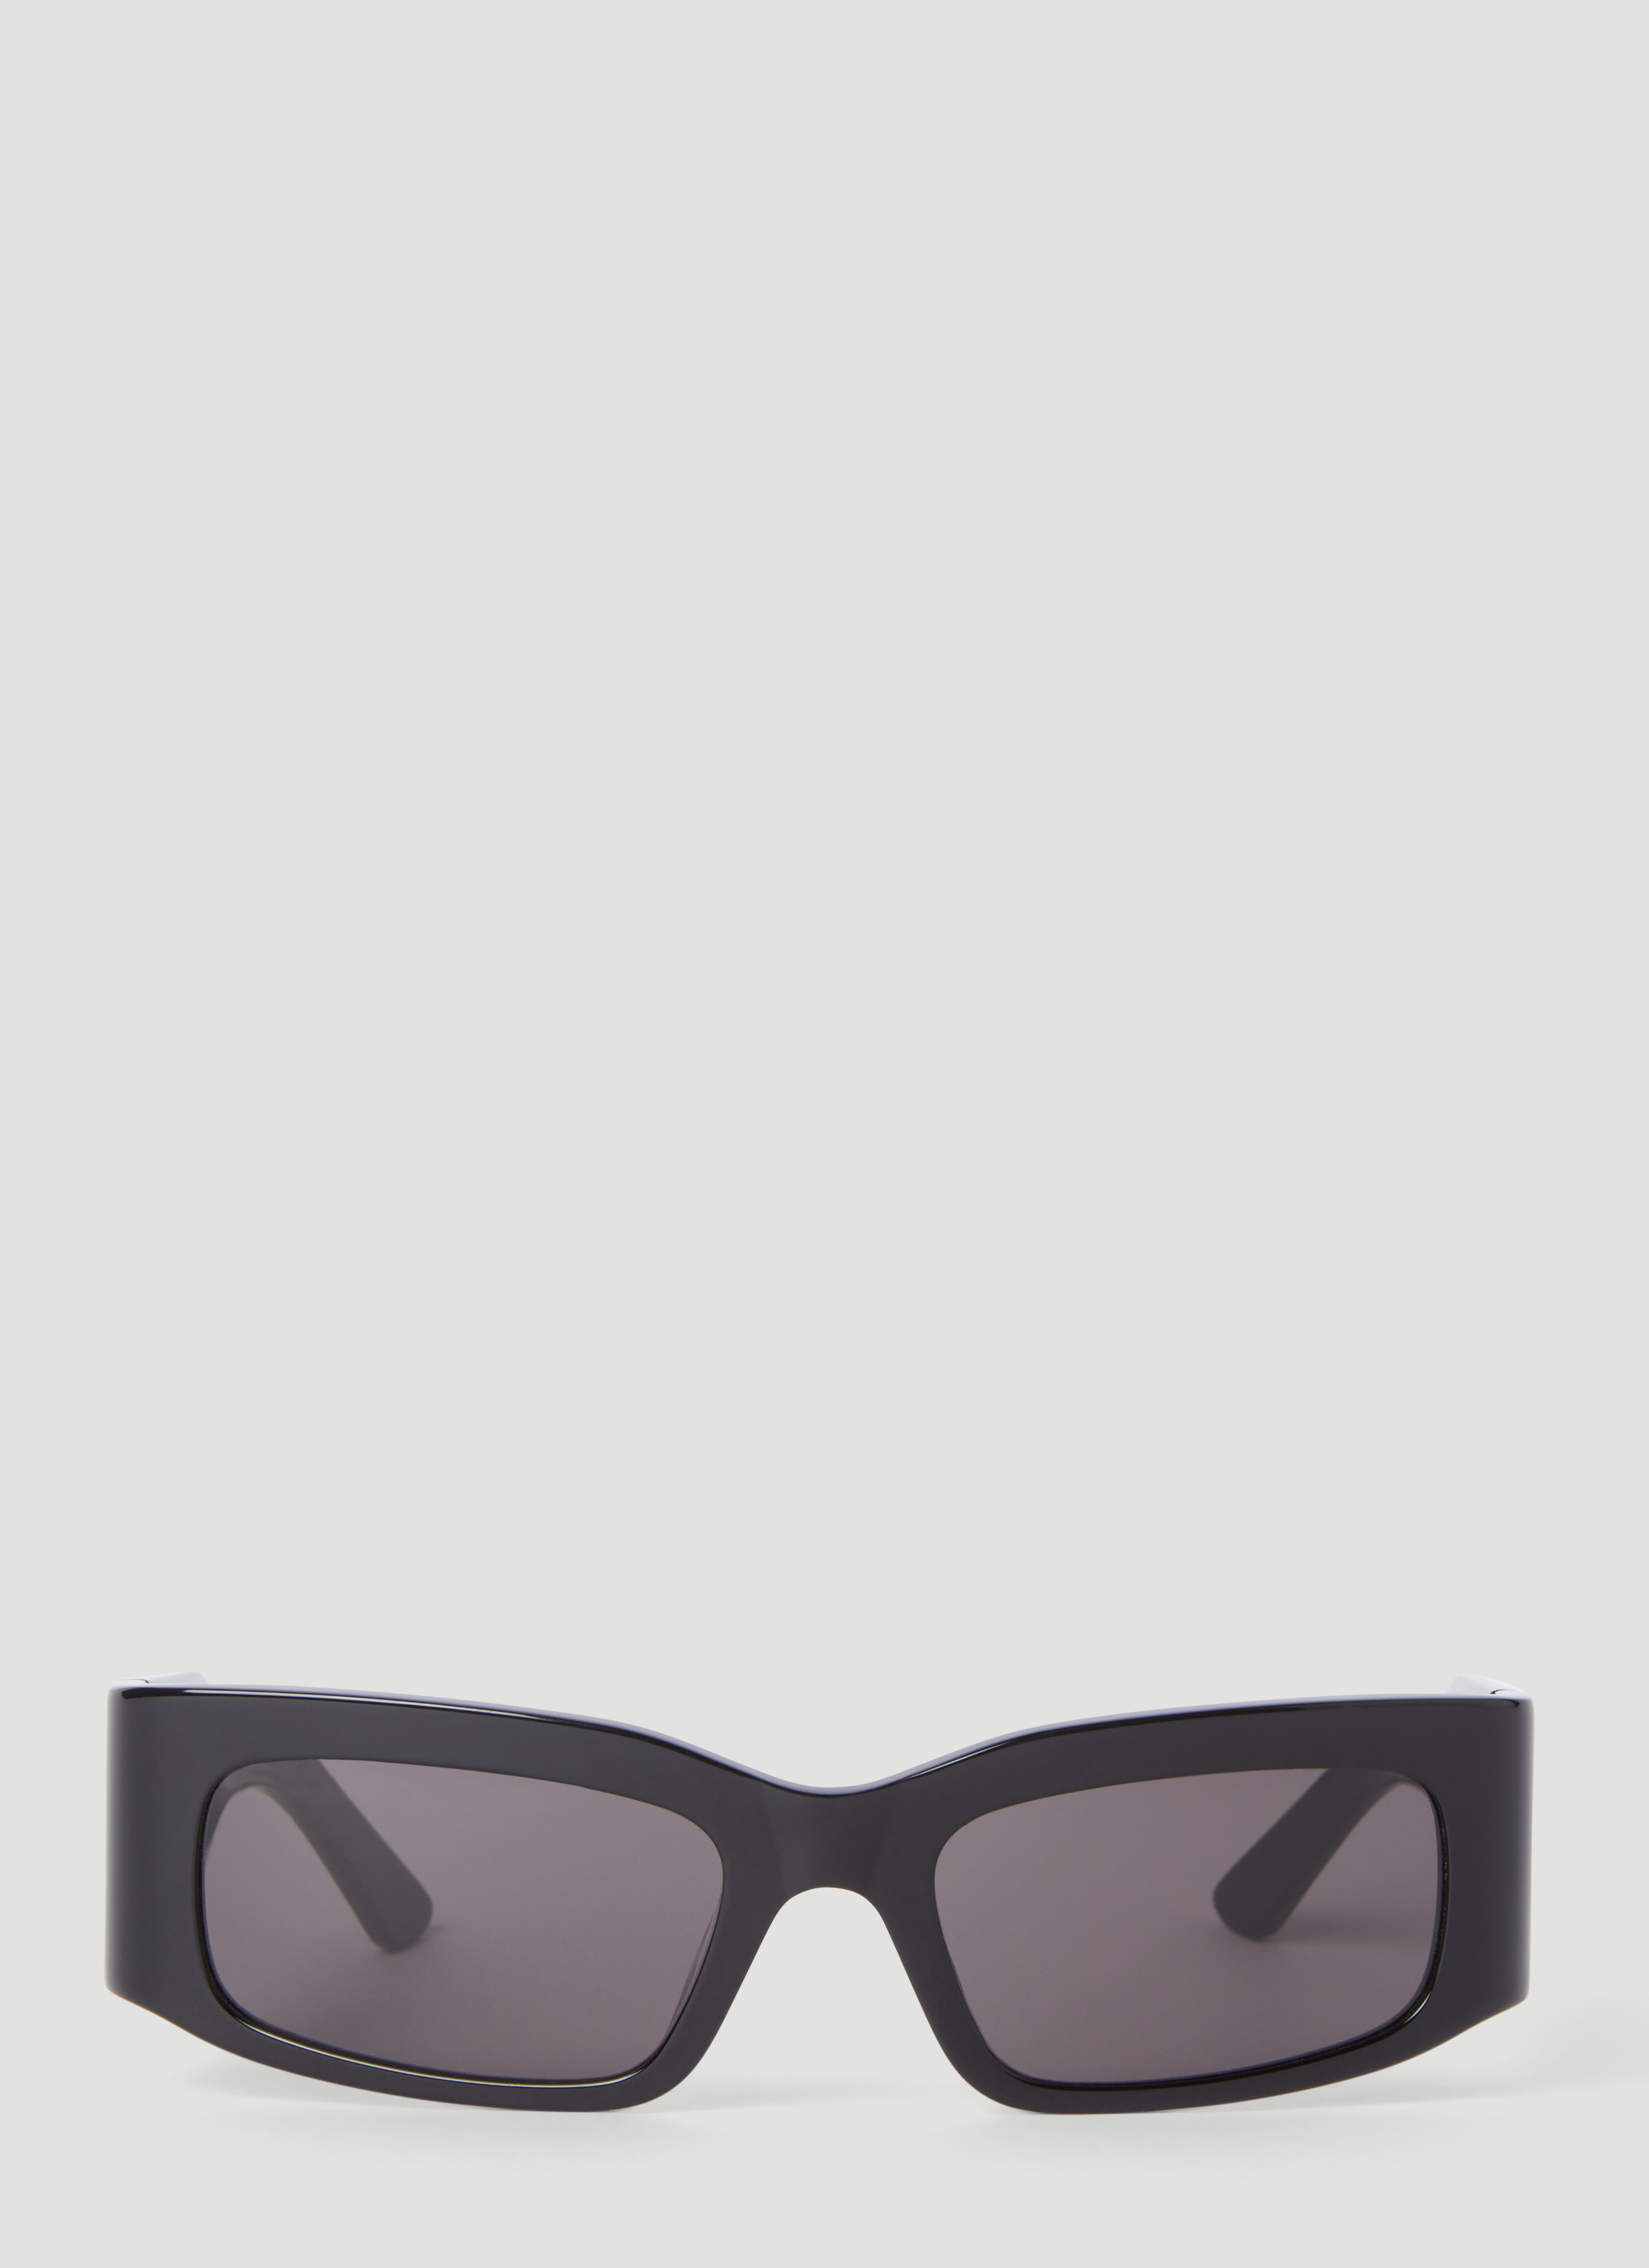 Balenciaga Paper Rectangle Sunglasses Black bcs0356001